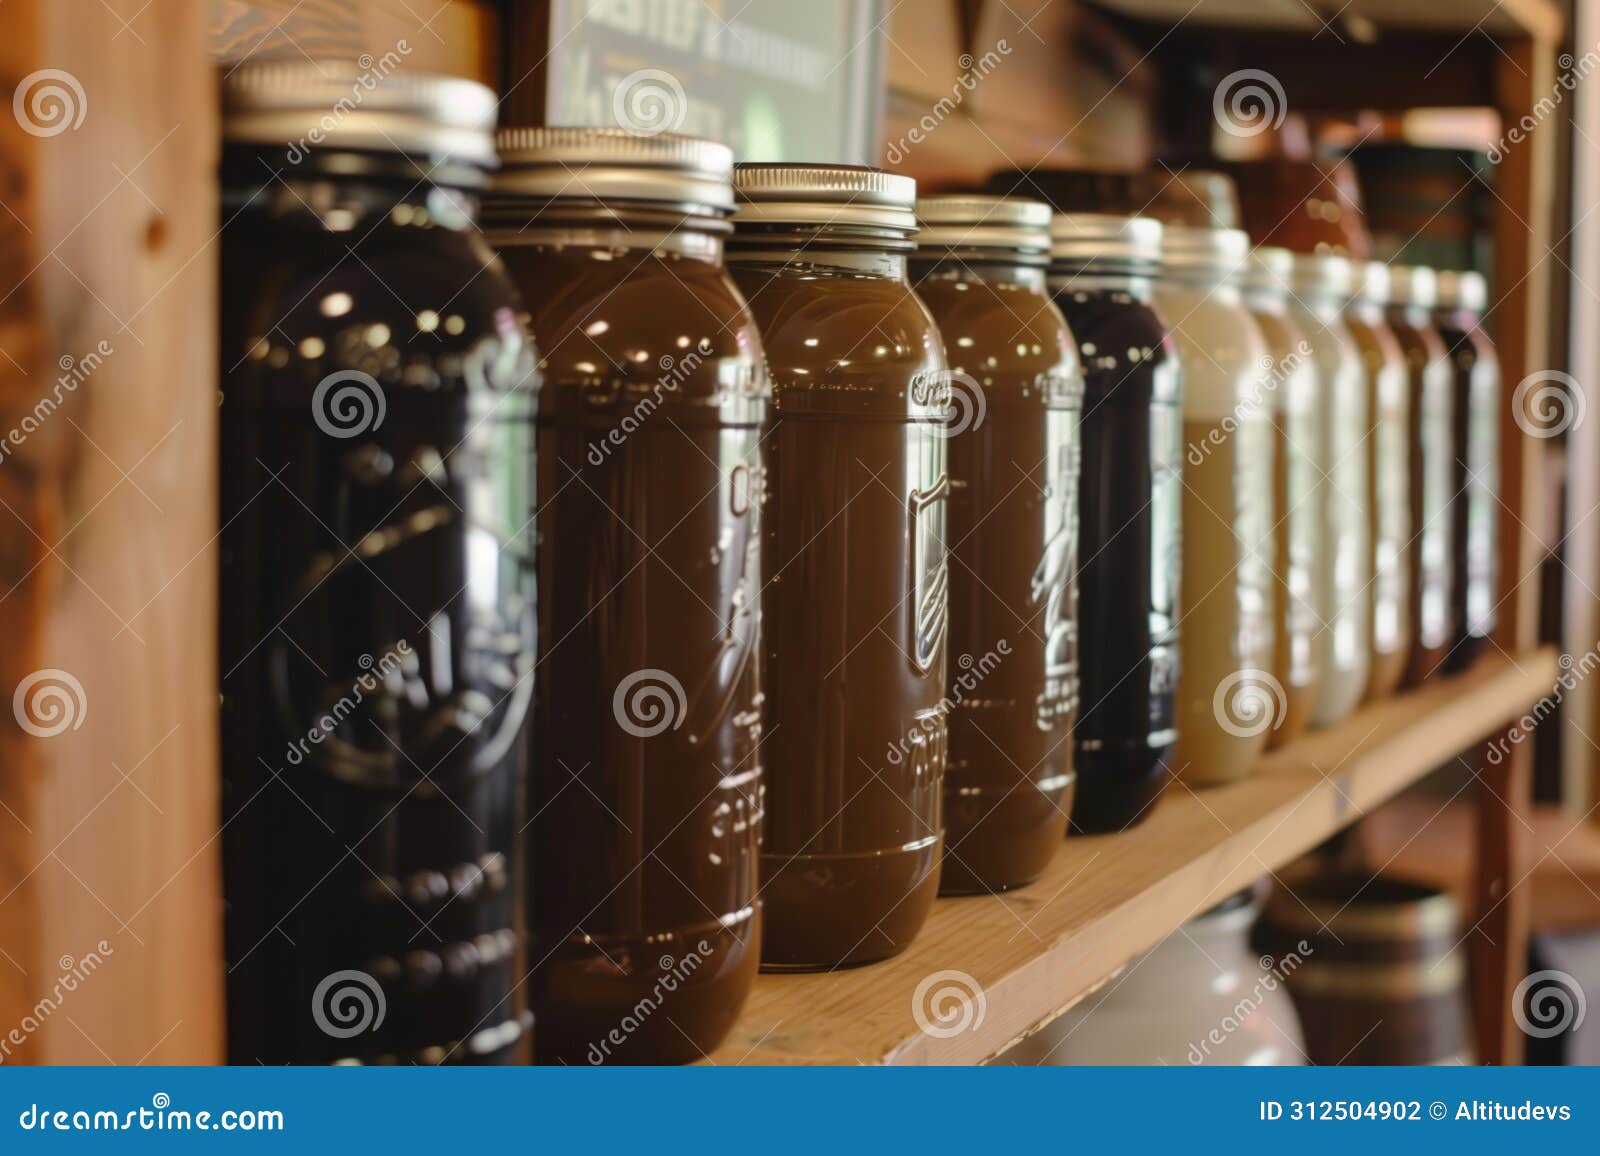 organized shelf of coffee jars in a caf